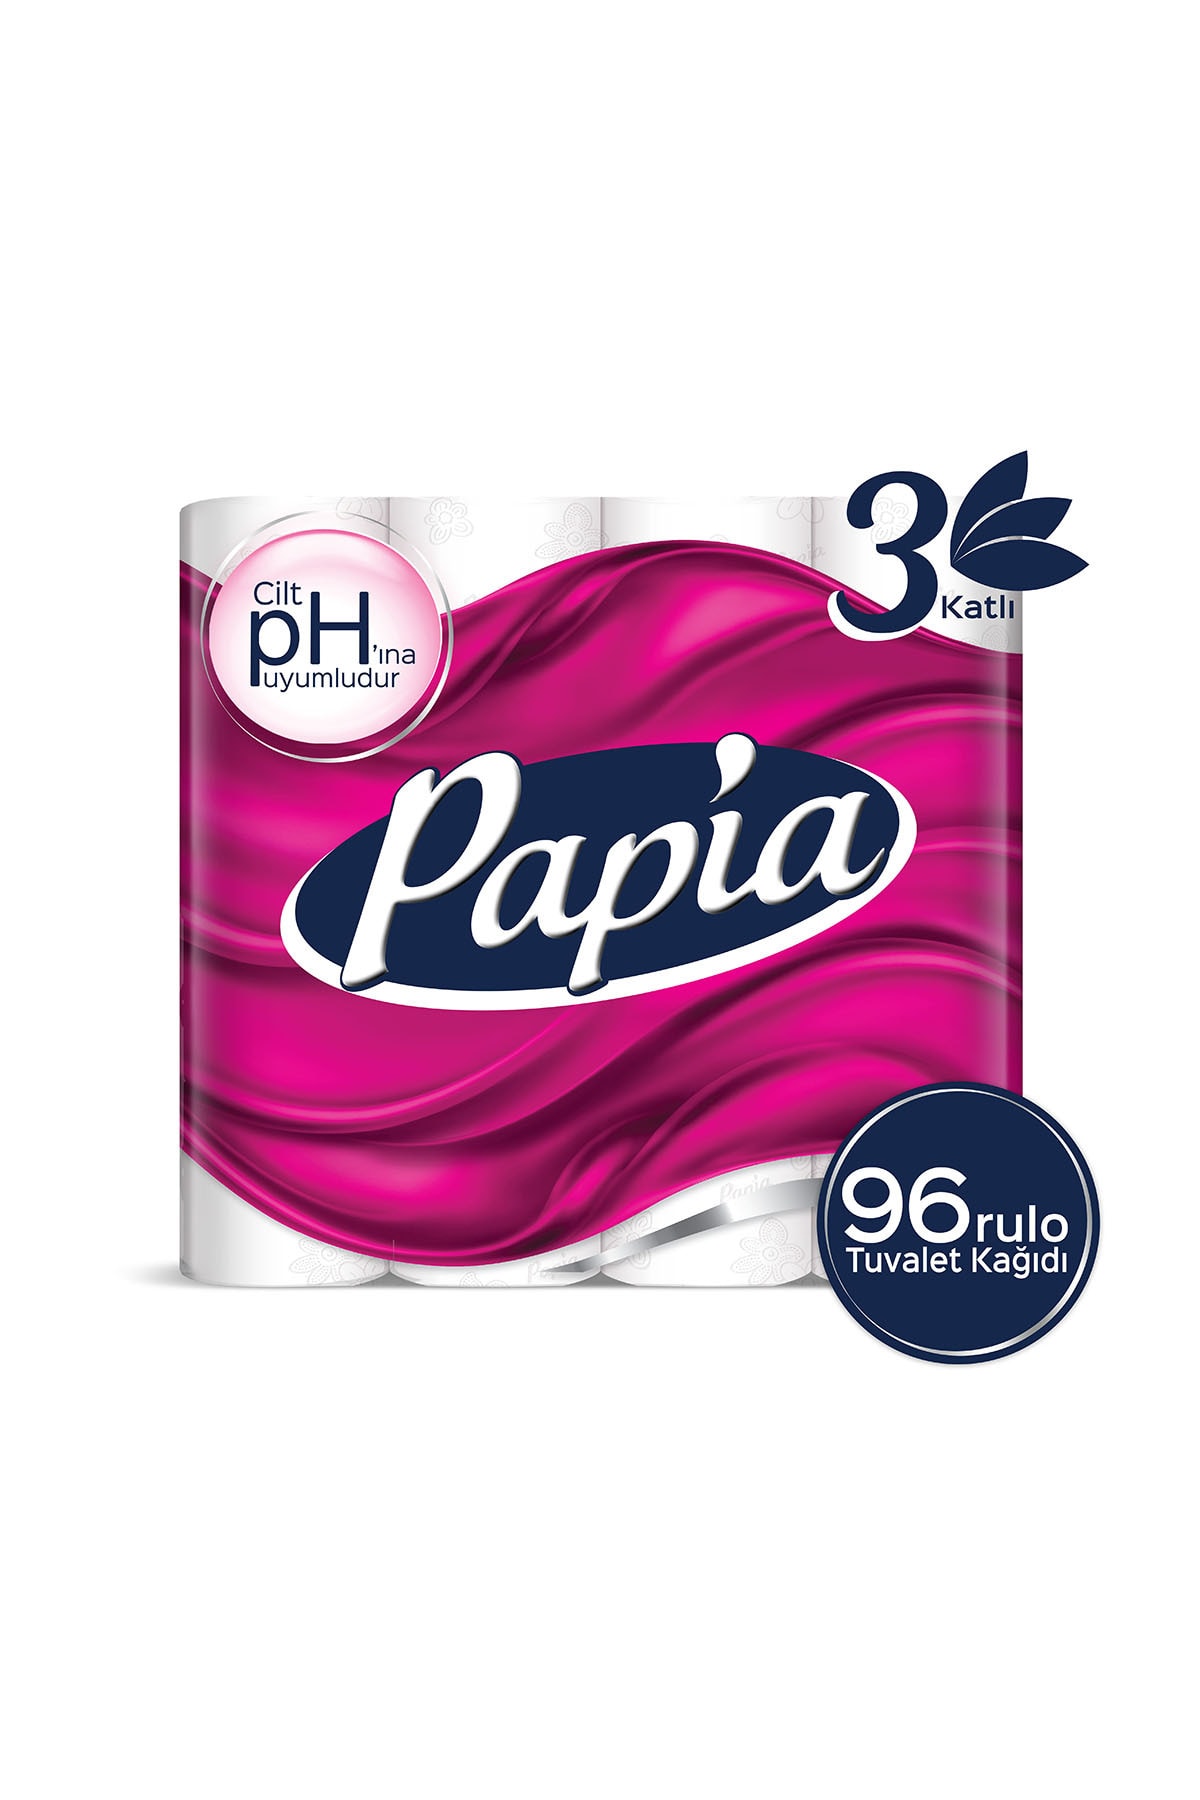 Papia Tuvalet Kağıdı 96 Rulo